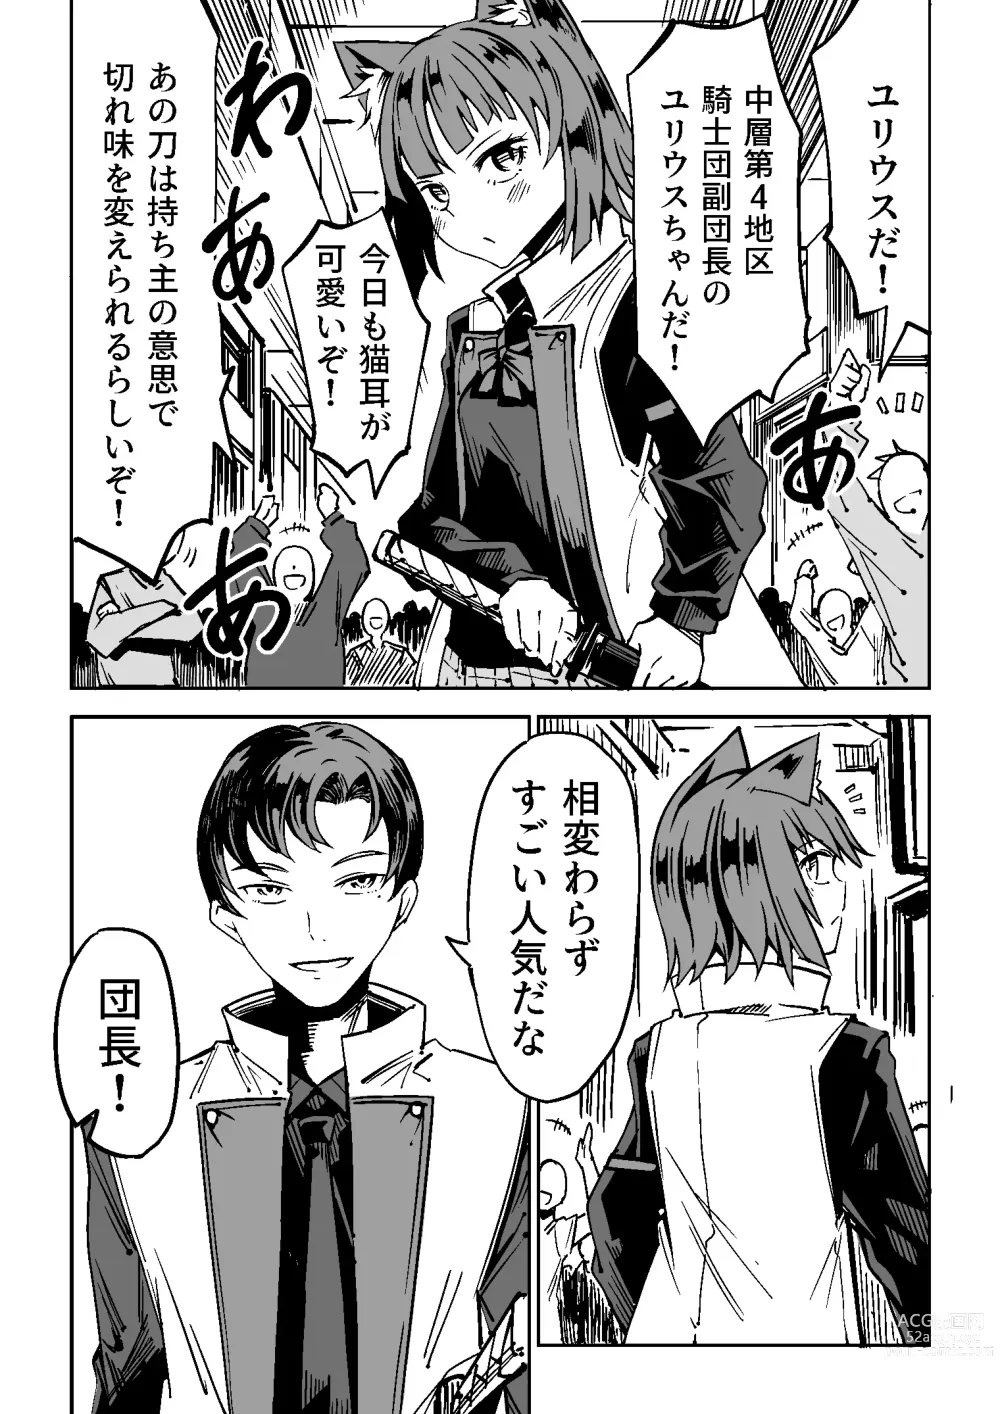 Page 4 of doujinshi NOID Episode:Julius